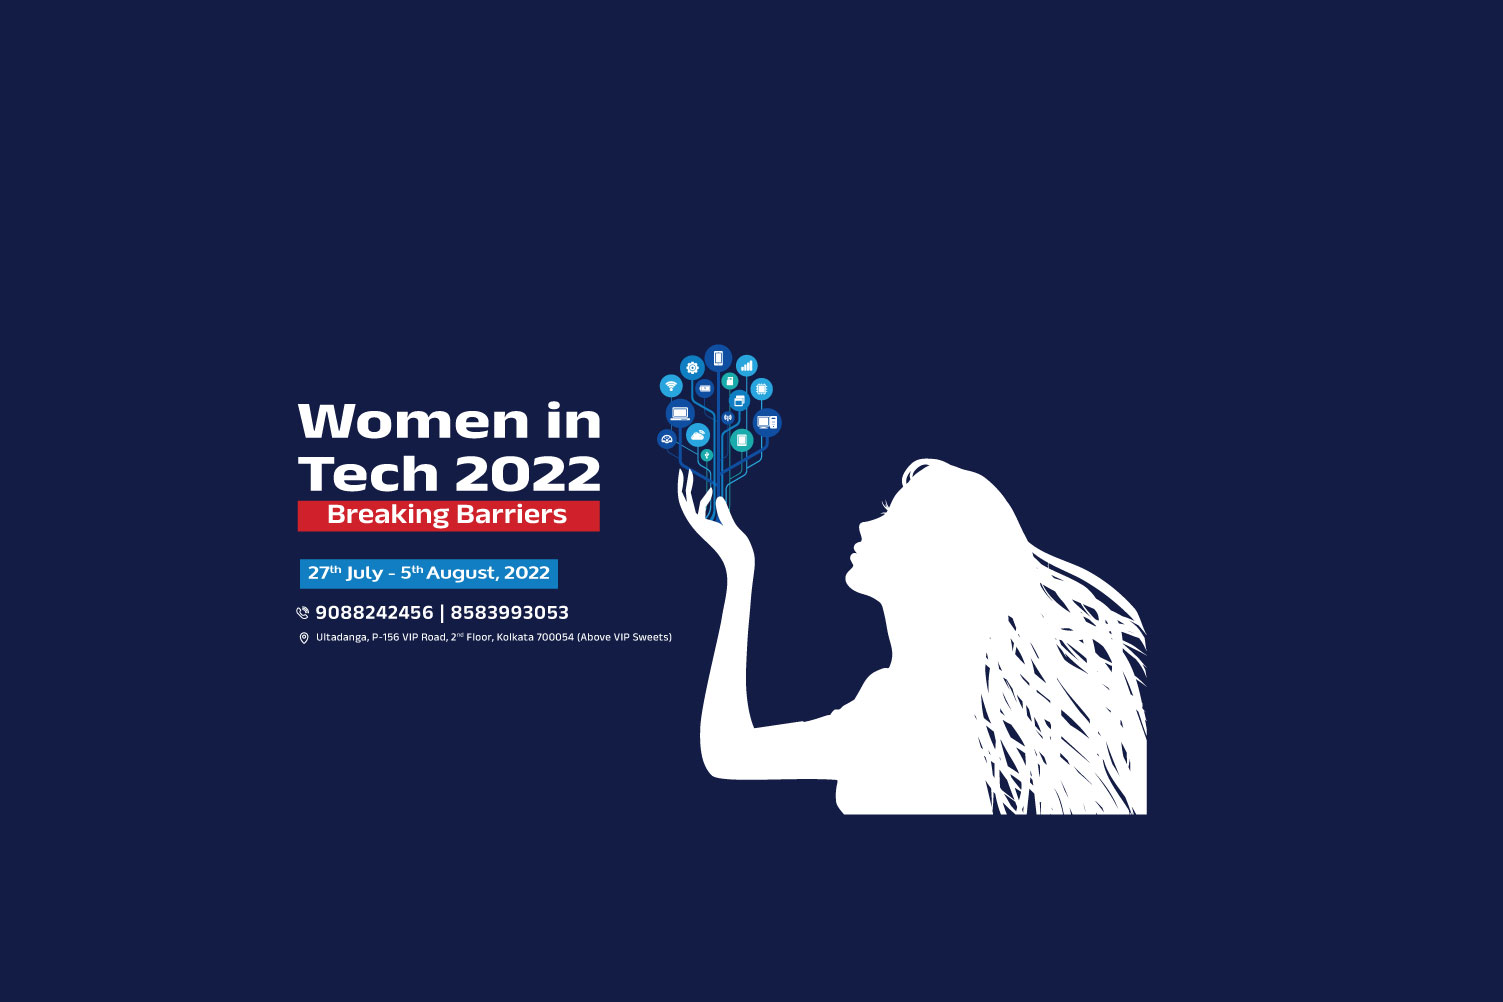 WOMEN IN TECH 2022